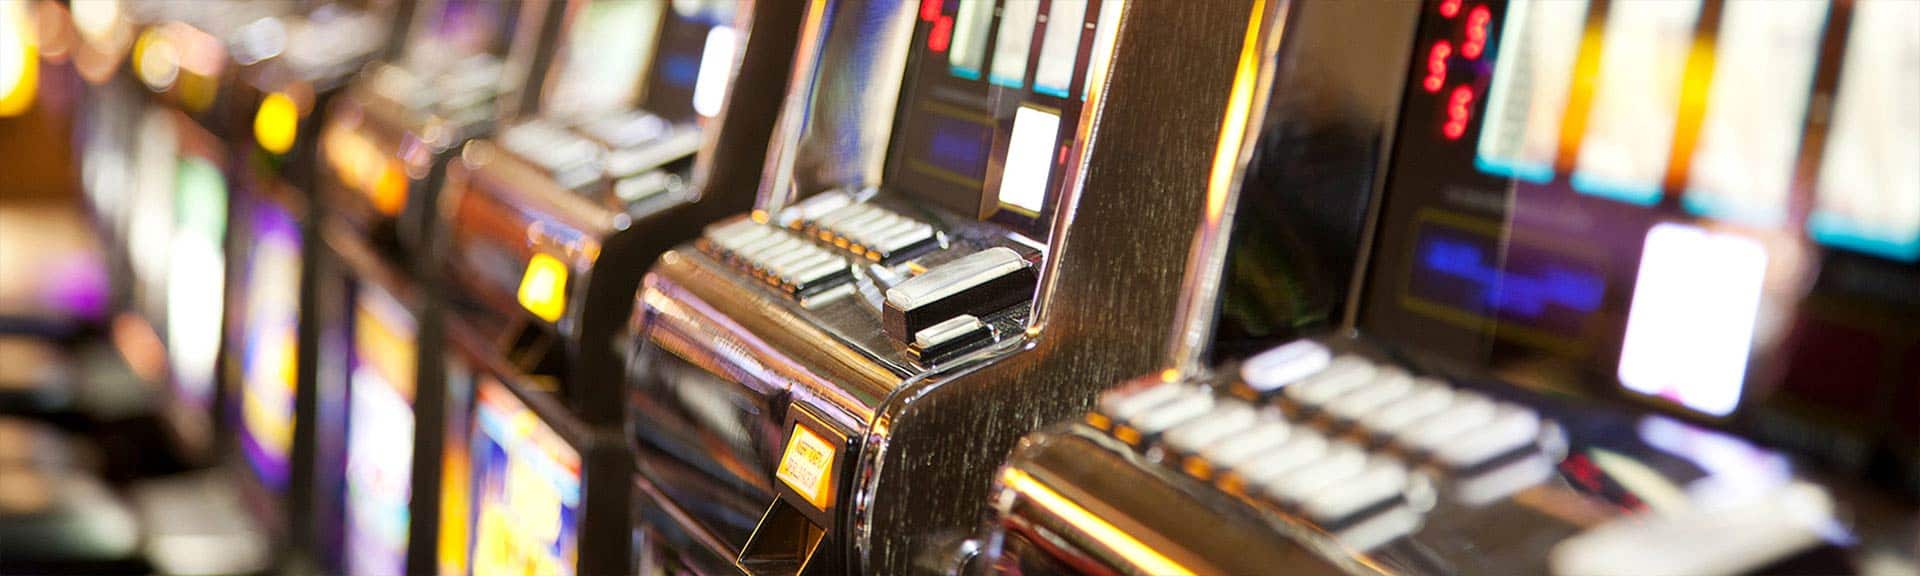 Row of Casino Slot Machines